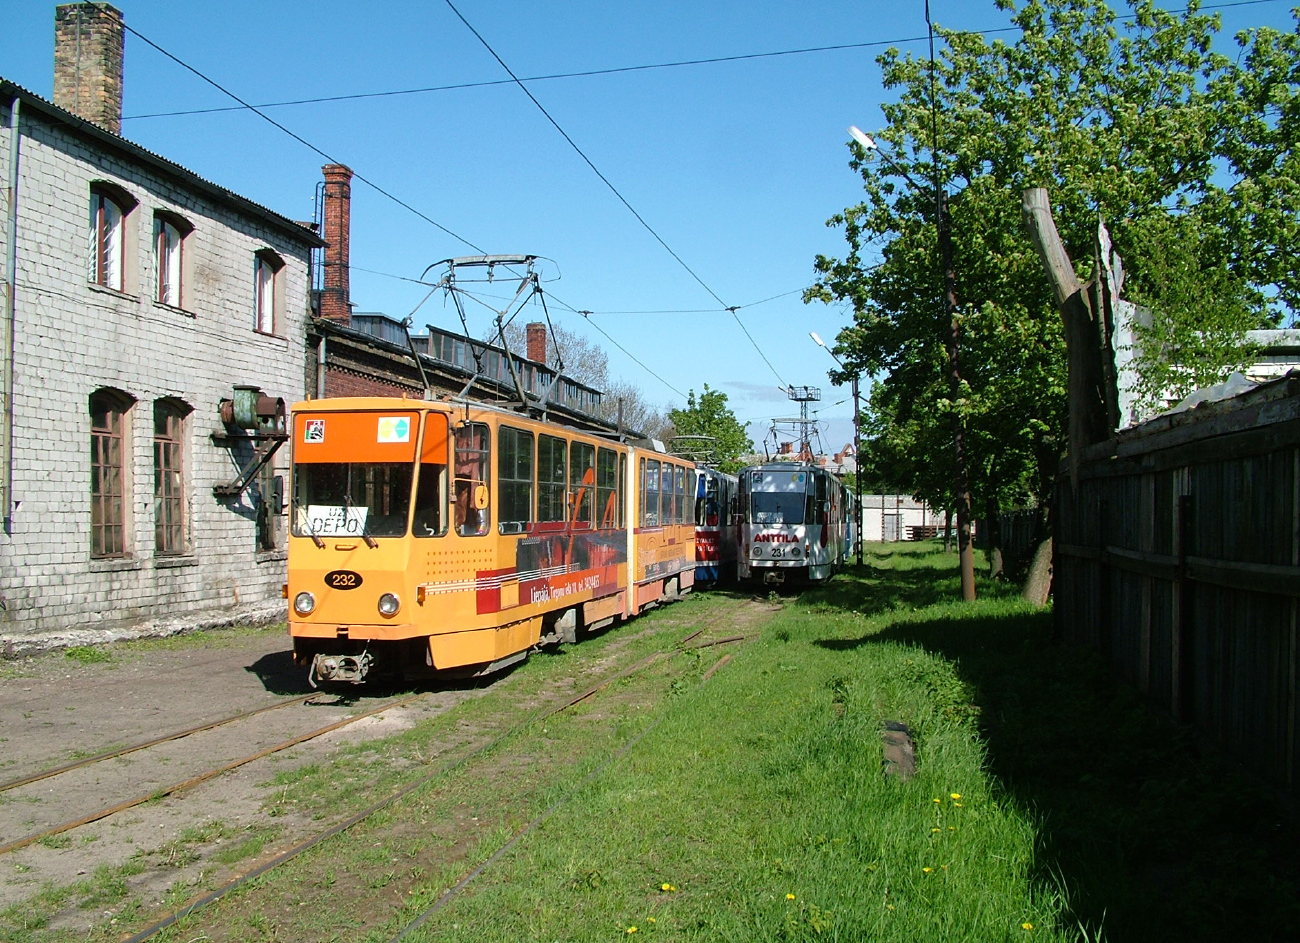 Liepaja, Tatra KT4SU Nr. 232; Liepaja, Tatra KT4SU Nr. 231; Liepaja — Tramway Depot